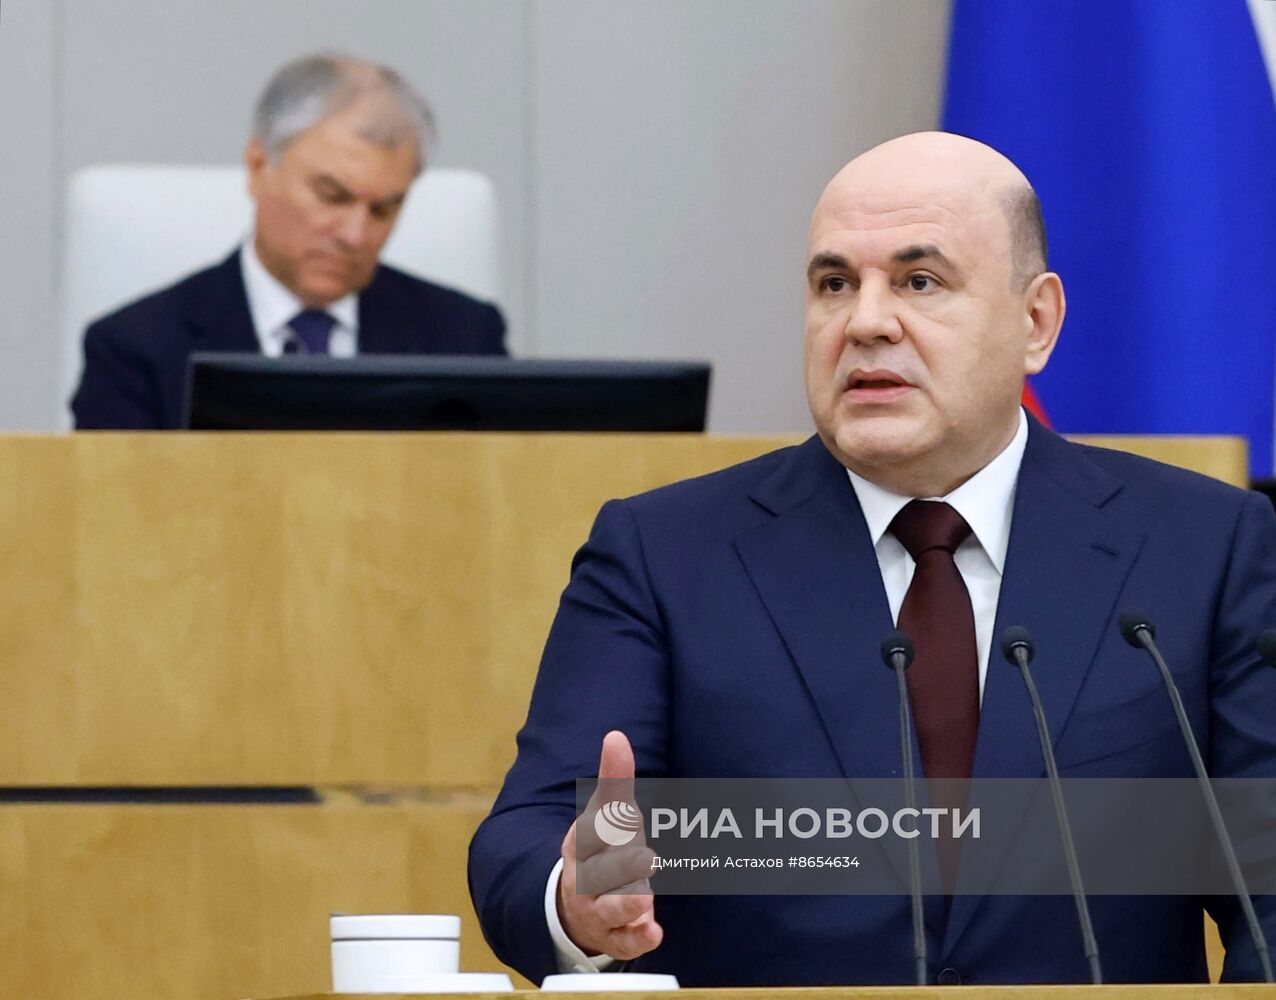 Михаил Мишустин в Государственной думе доложил о выполнении шести важнейших задач